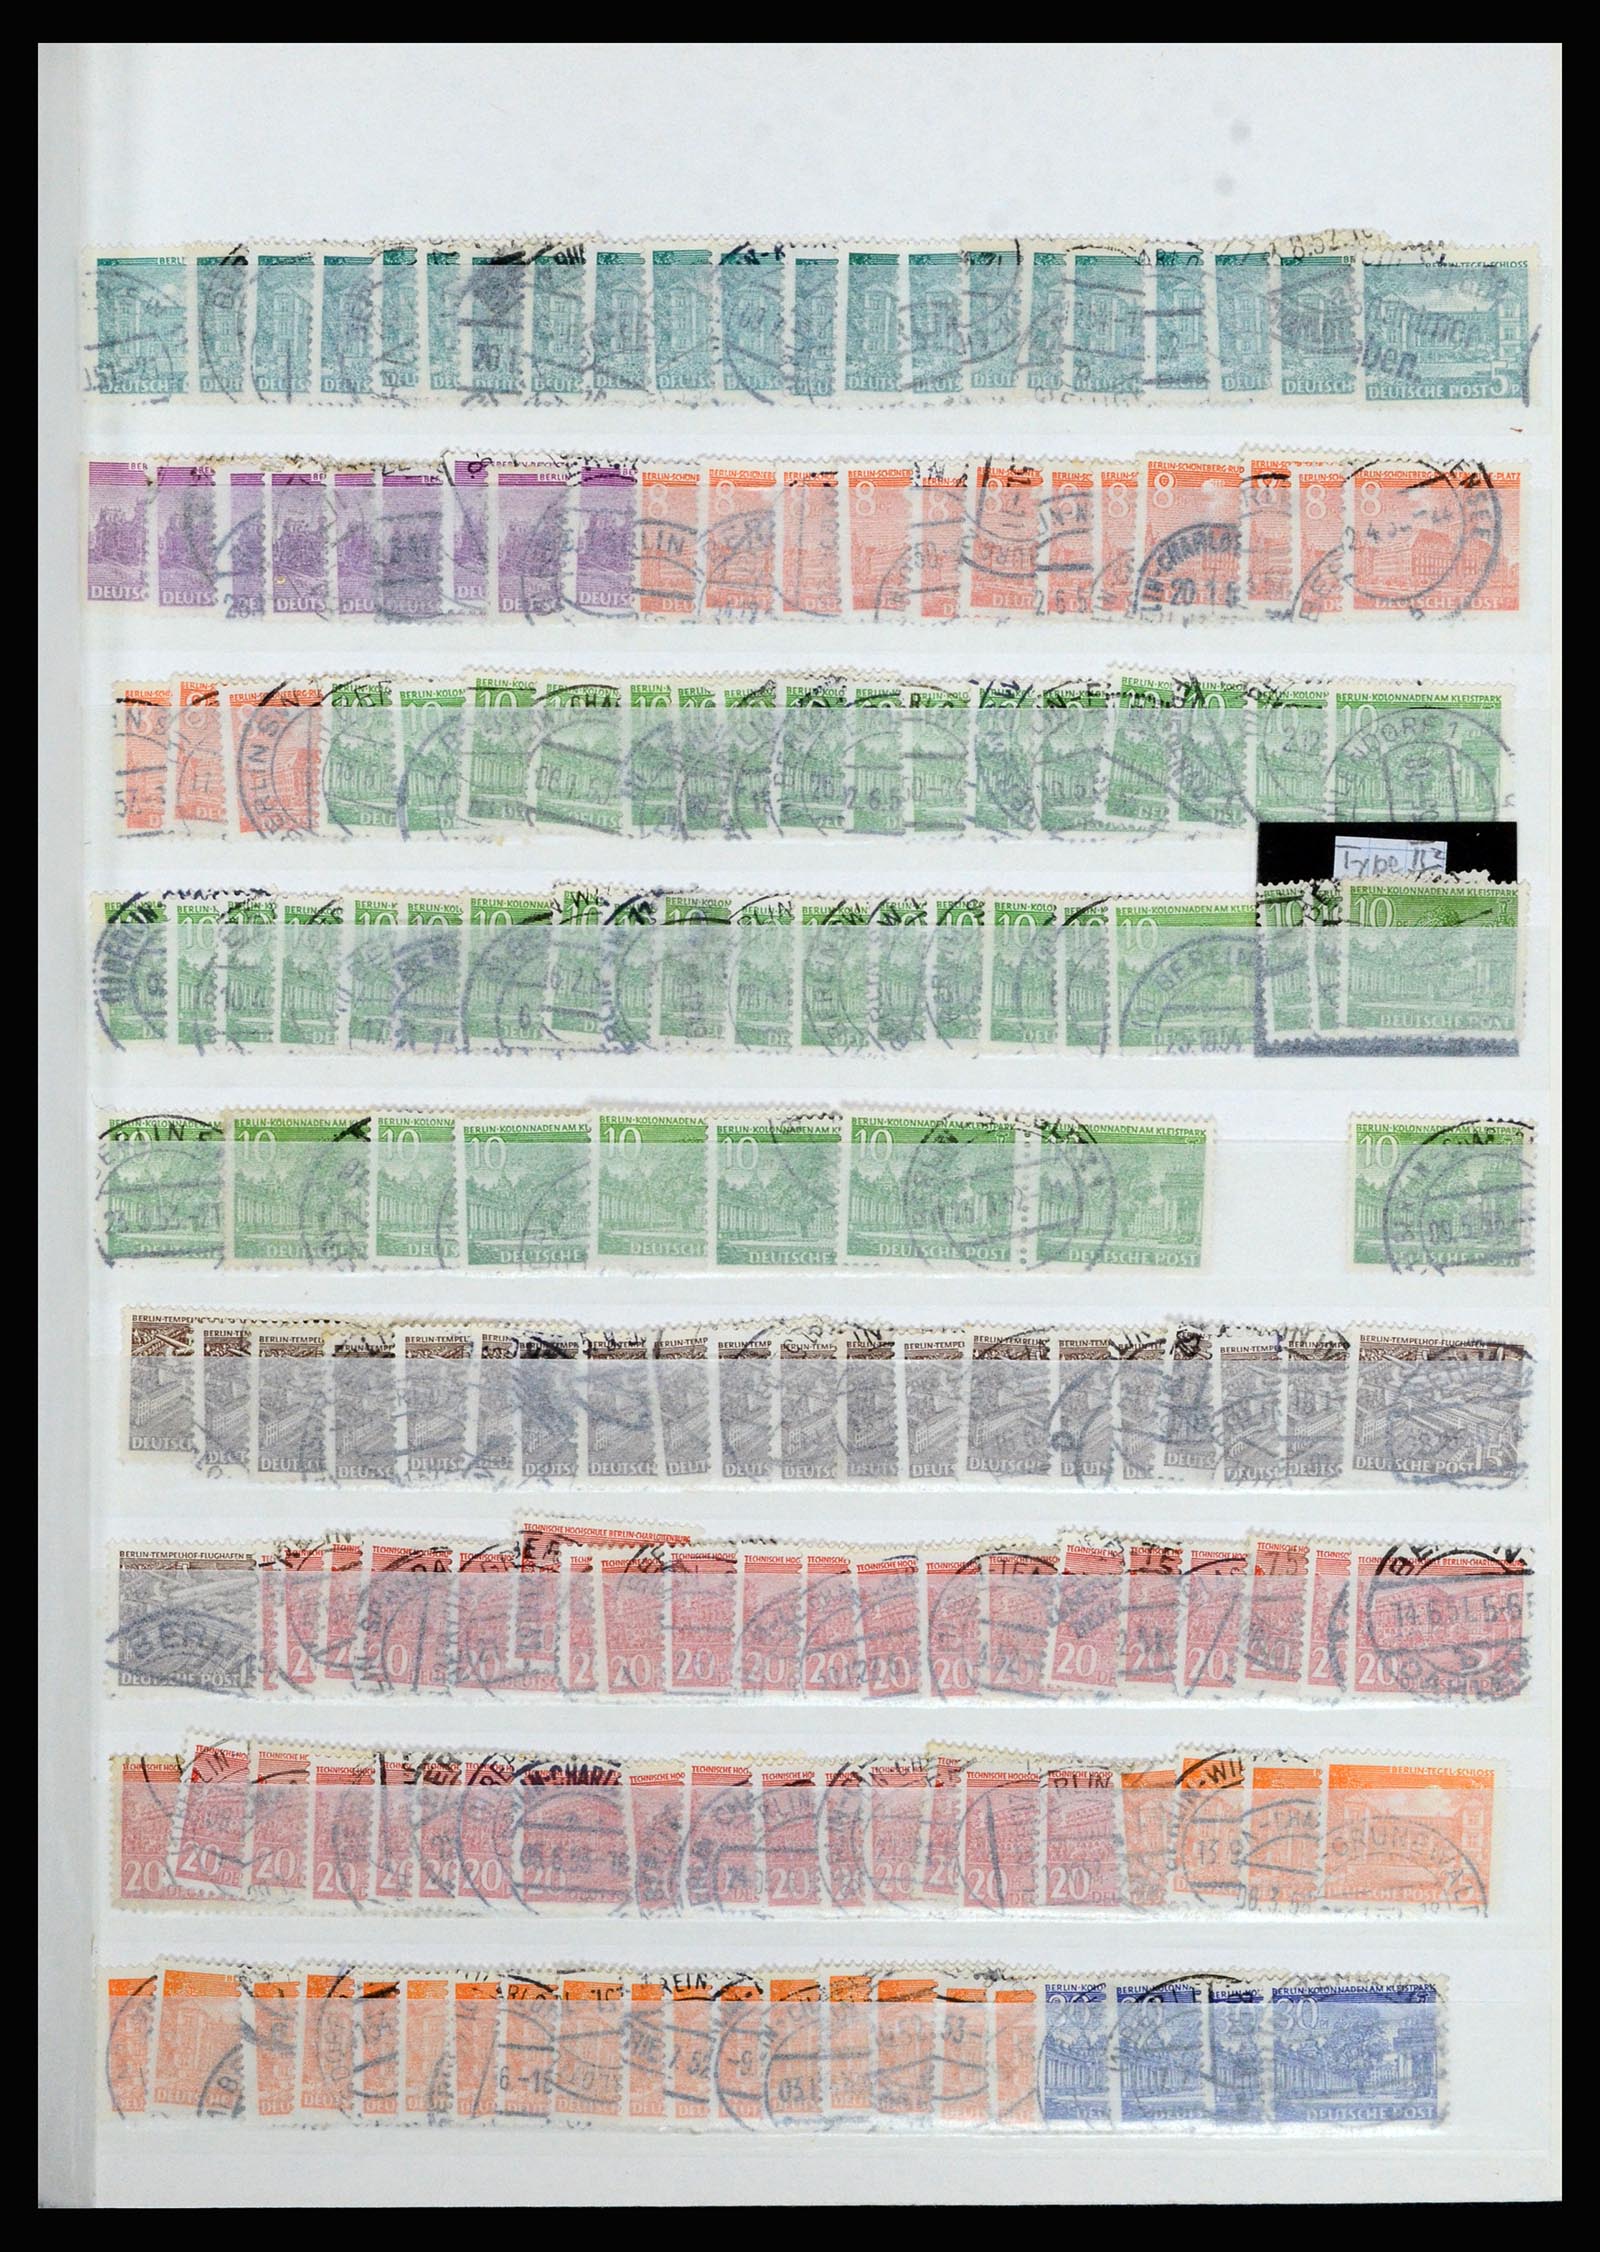 36628 003 - Stamp collection 36628 Berlijn 1948-1990.